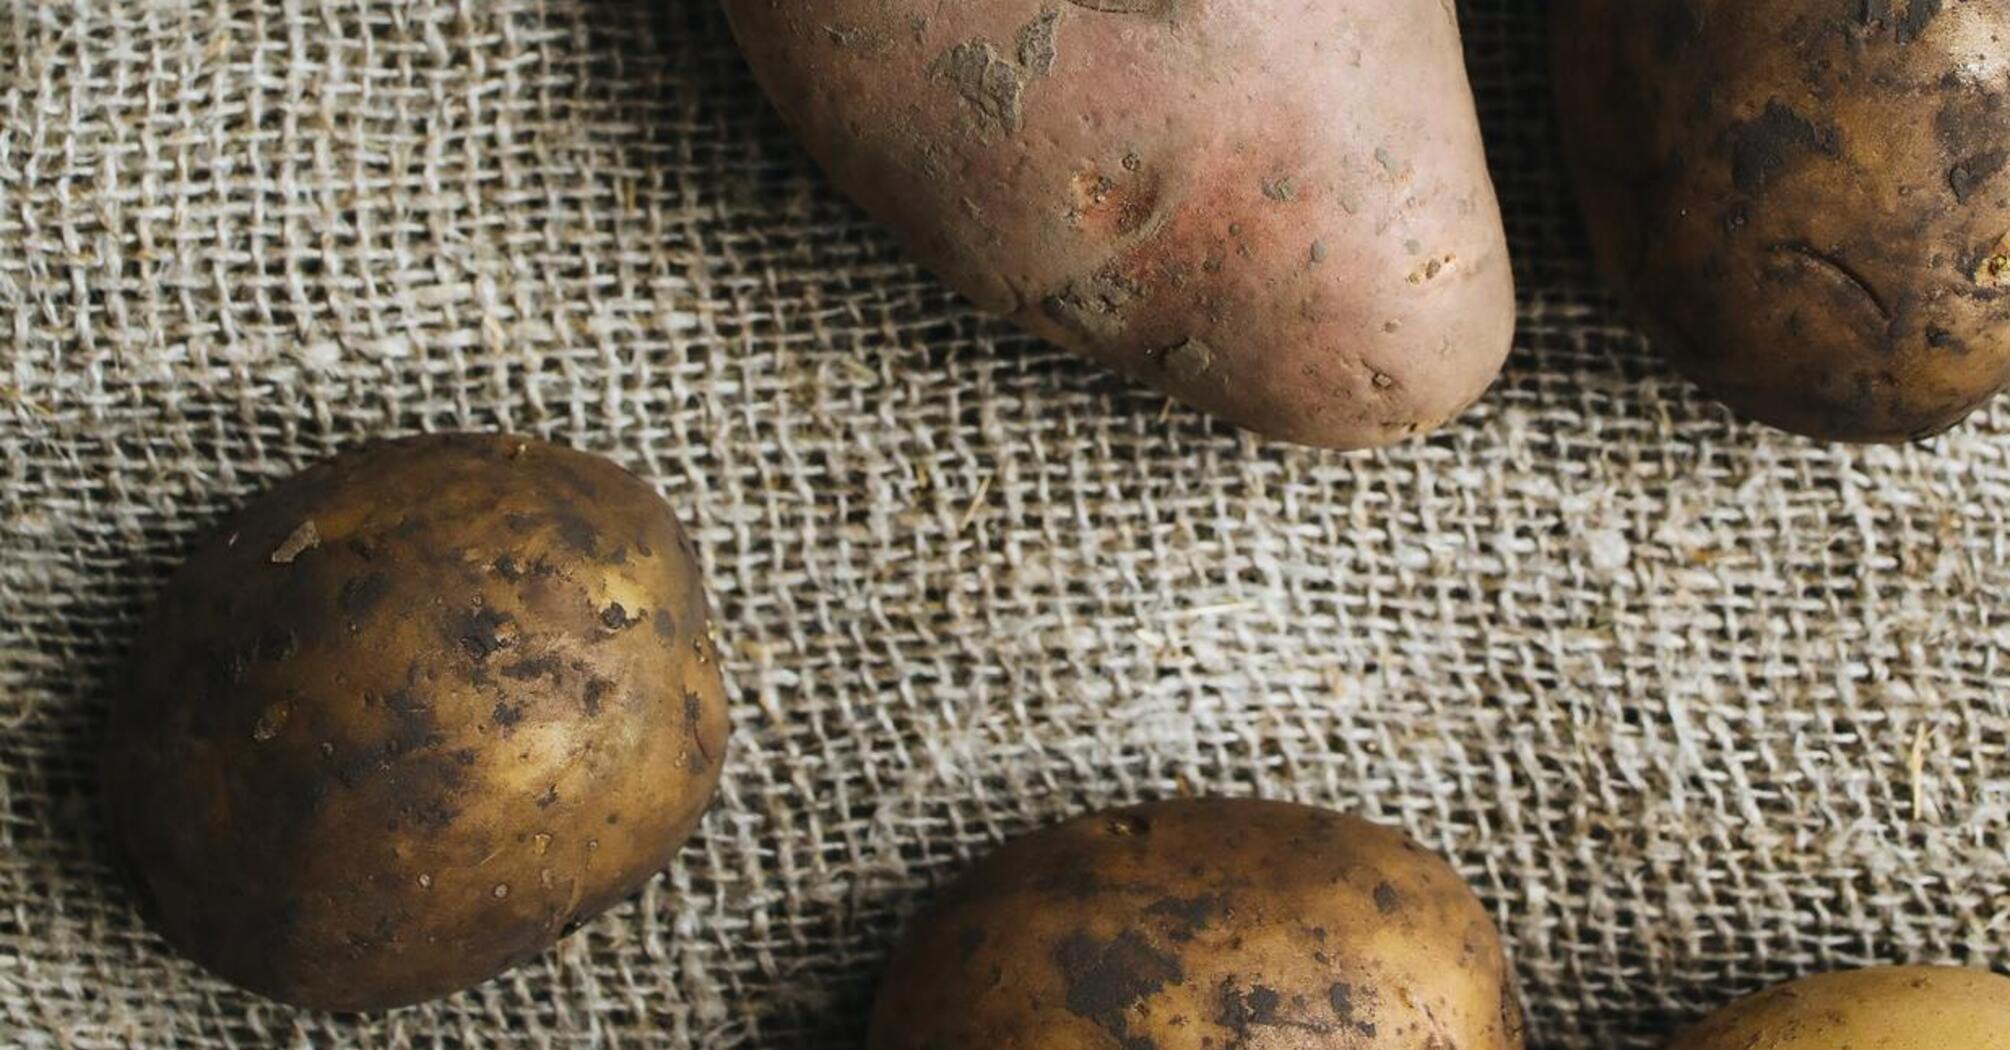 Как правильно хранить картофель в домашних условиях, чтобы предотвратить его гниение